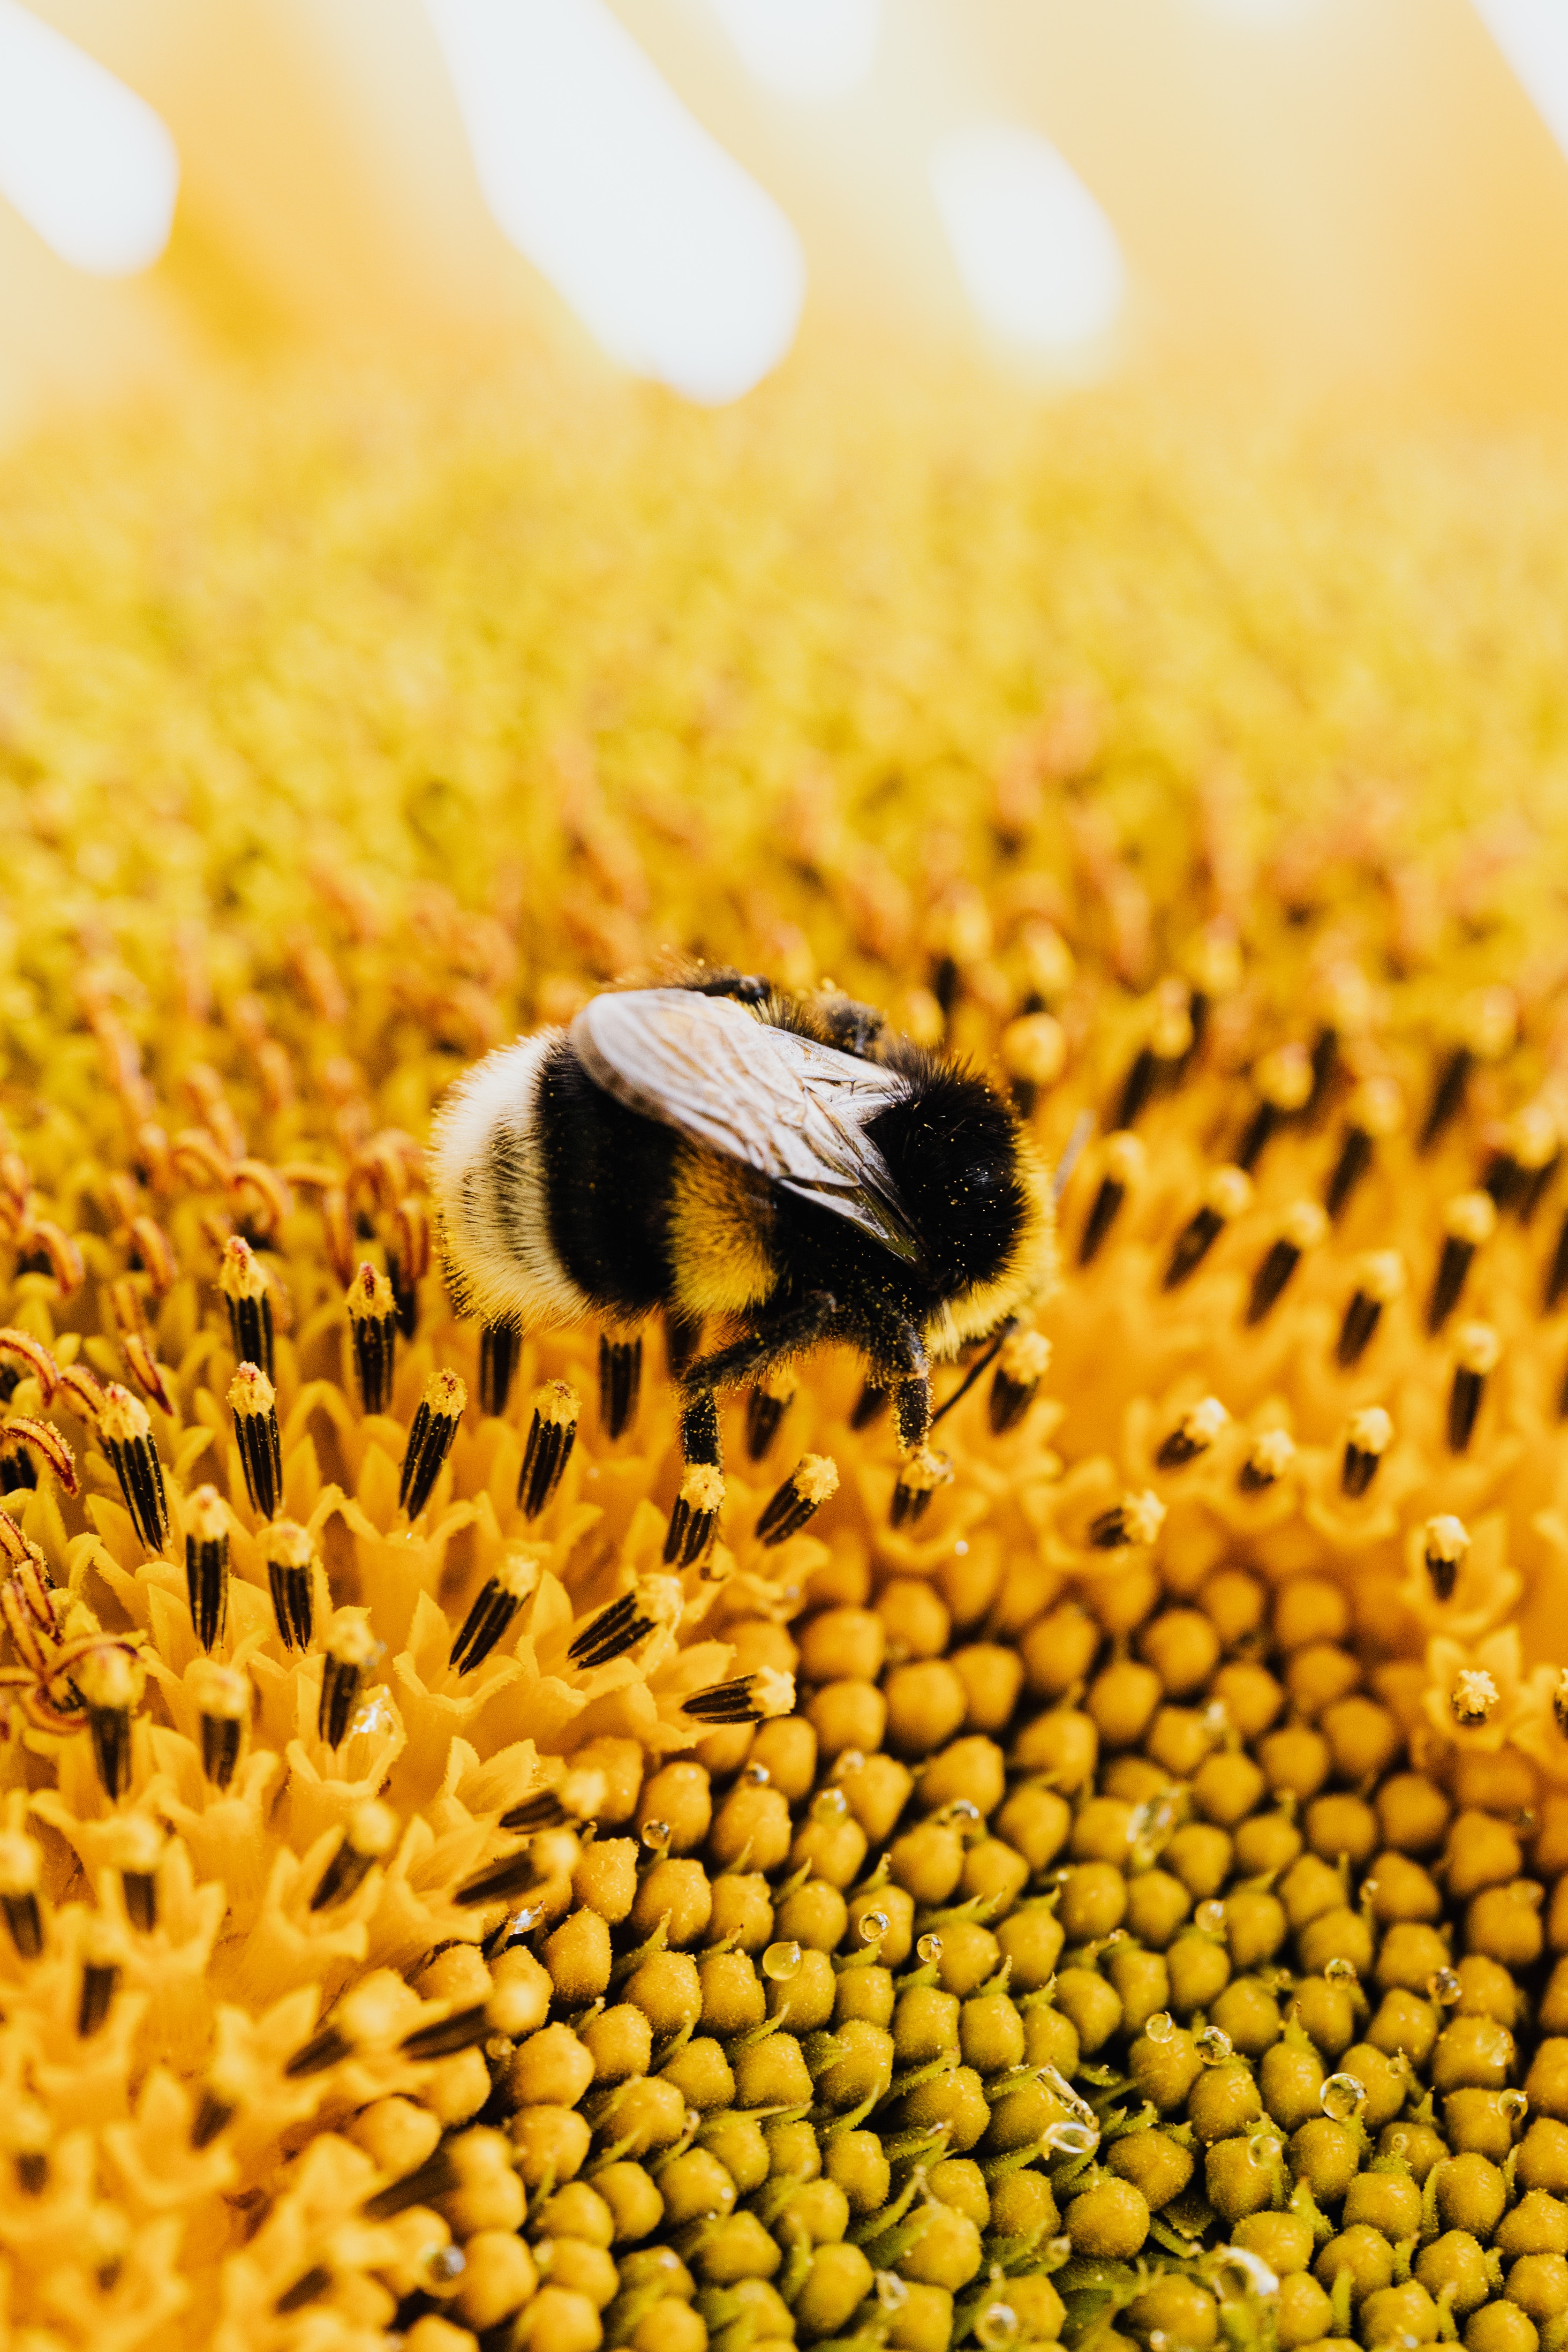 Best Pollen Photo · 100% Free Downloads